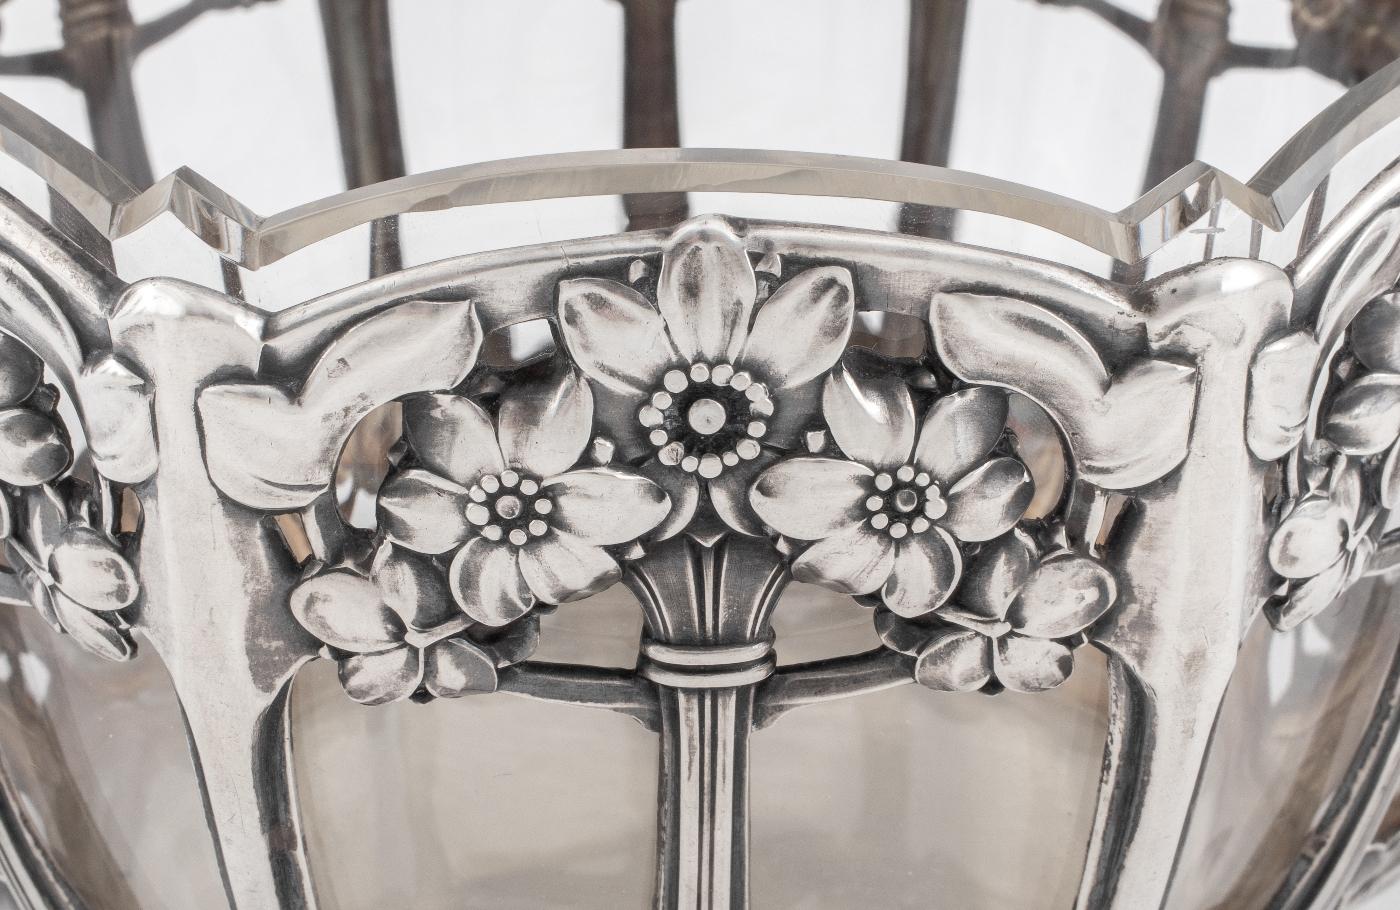 L. Posen Jugendstil Silver and Glass Bowl, circa 1905 For Sale 2